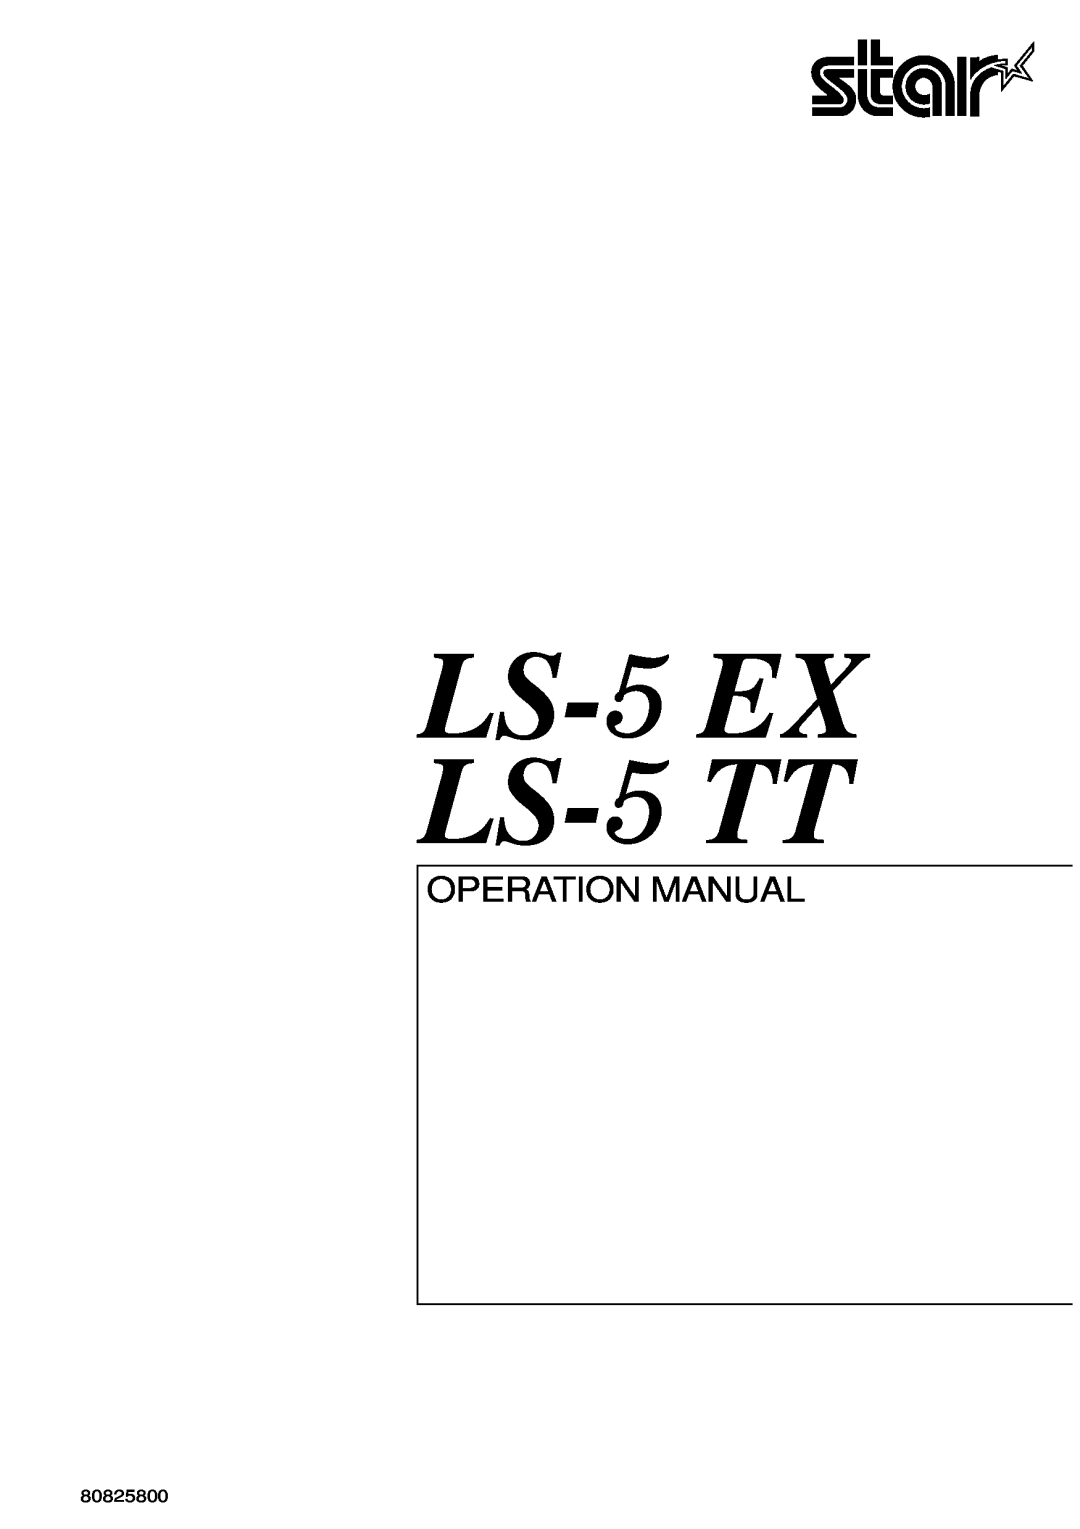 Star Micronics LS-5 TT, LS-5 EX operation manual Ls- Ex Ls- Tt, Operation Manual, 80825800 